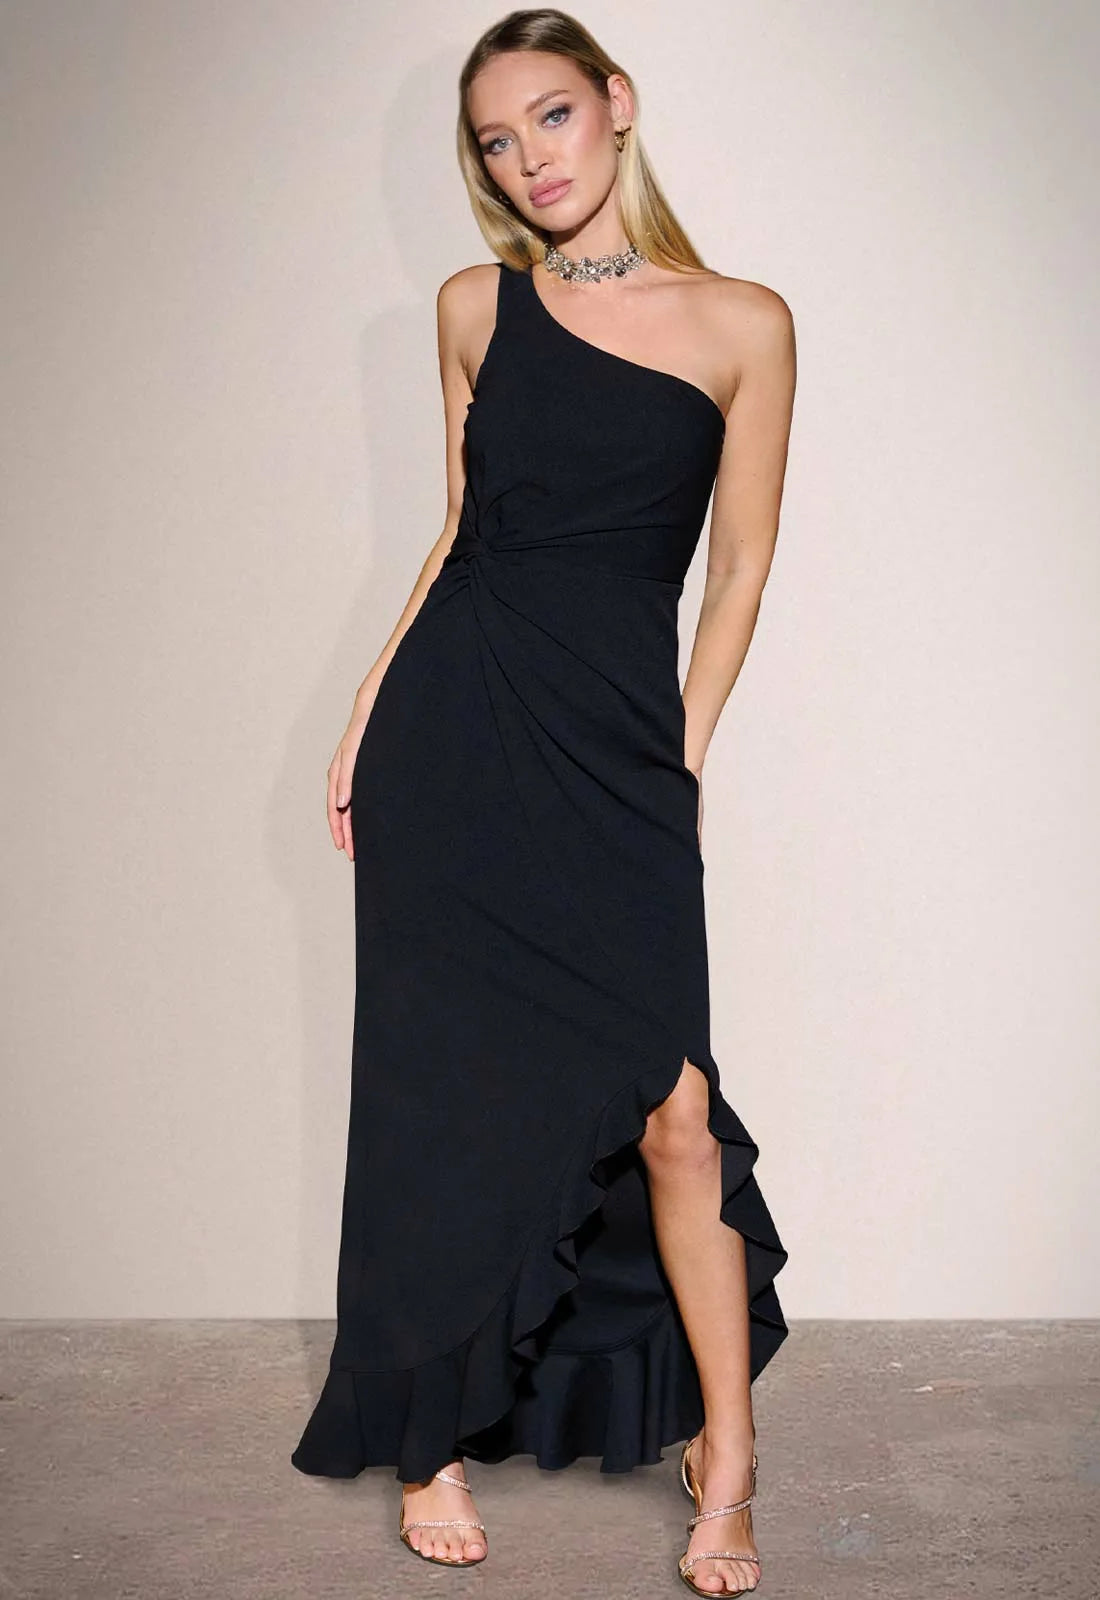 Litlte Black Dress Collection Black Jenna Dress